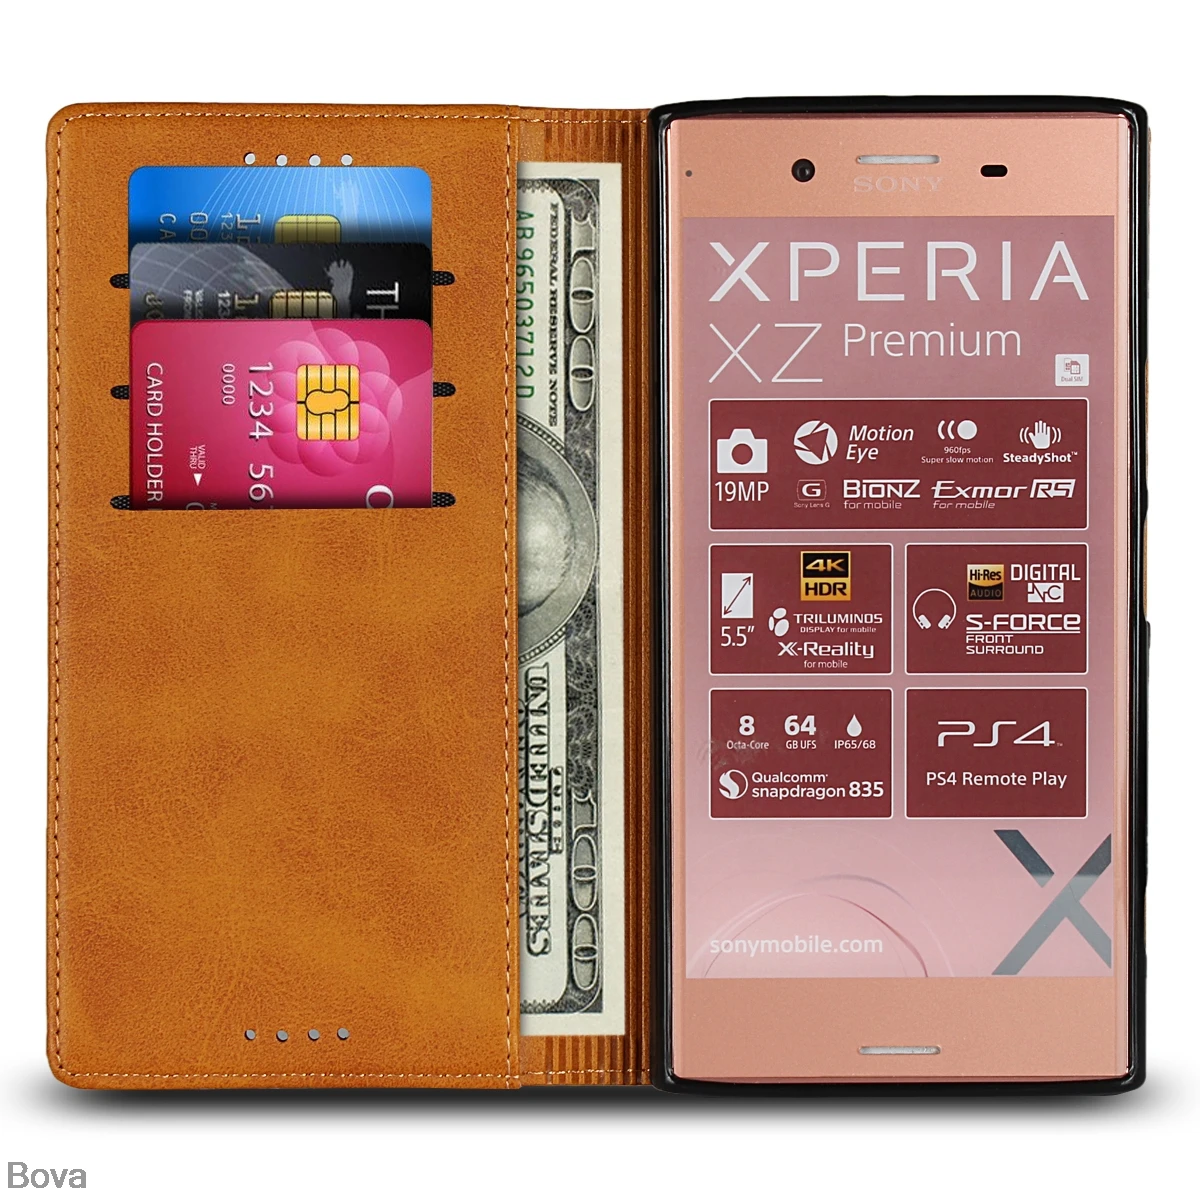 Кожаный чехол для Sony Xperia XZ1 XZ Premium XZ2, флип-чехол с держателем для карт, чехол с магнитной застежкой, чехол-кошелек